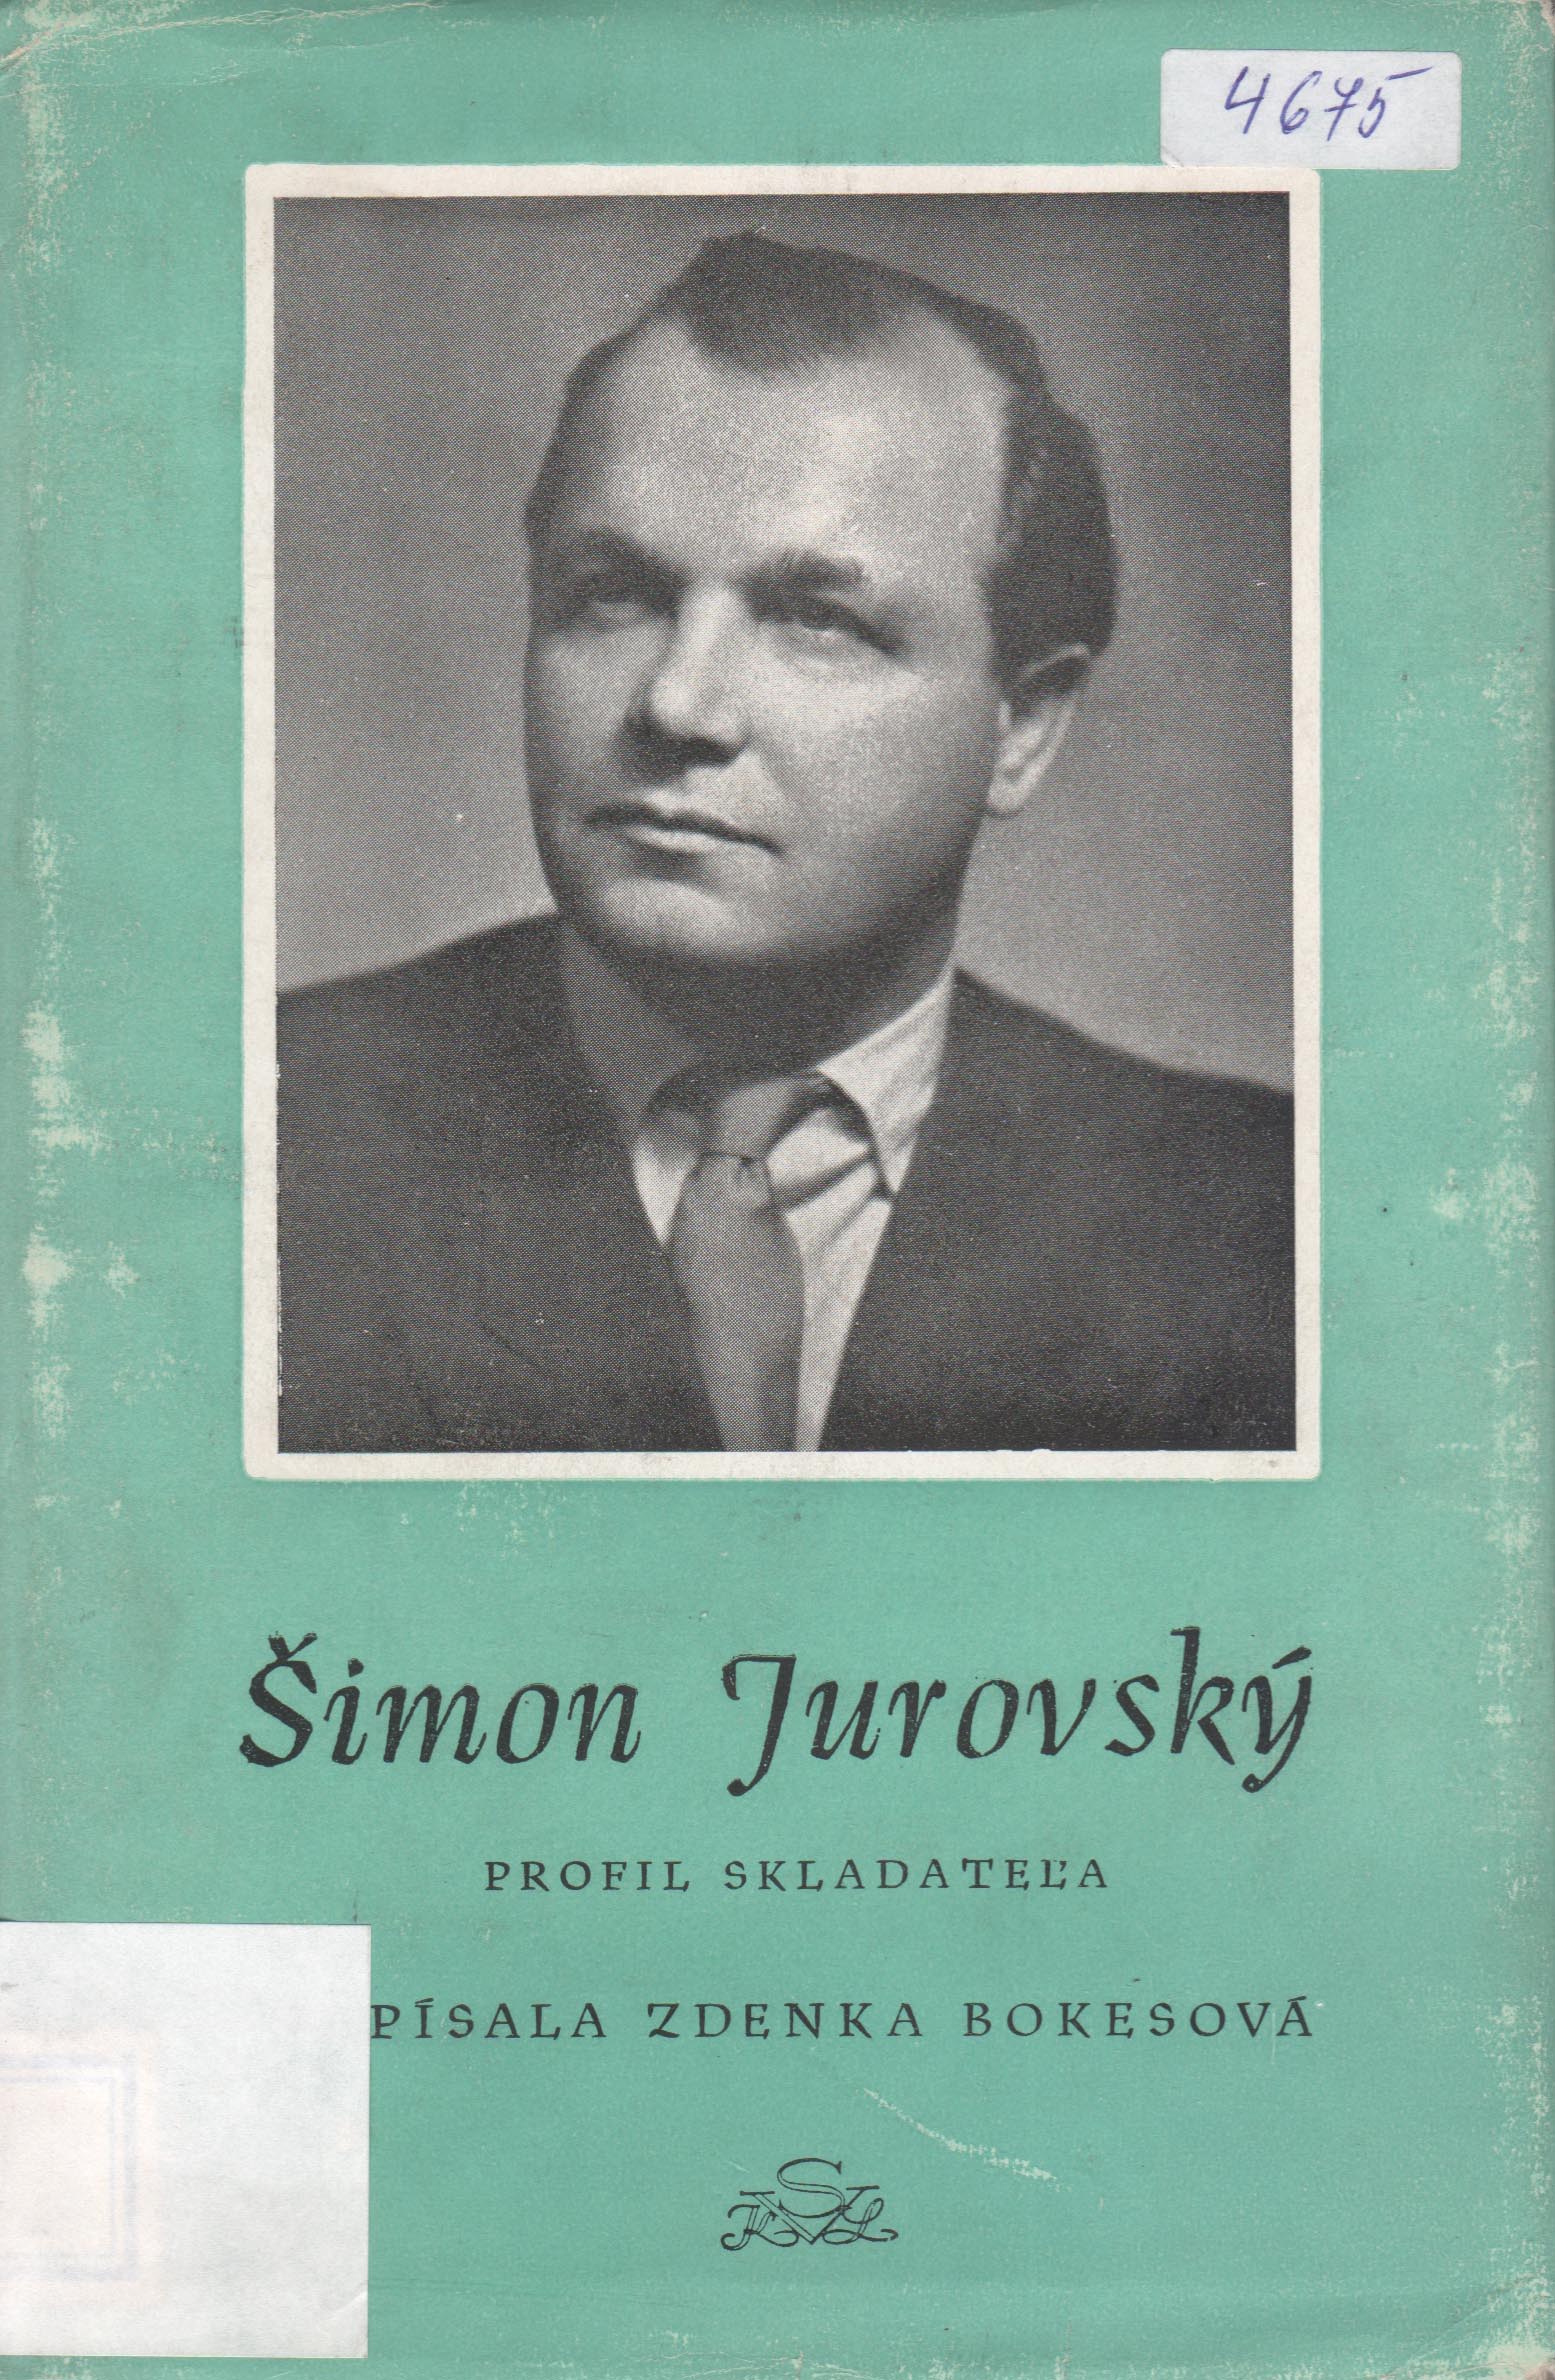 Šimon Jurkovský (Zdenka Bokesová)